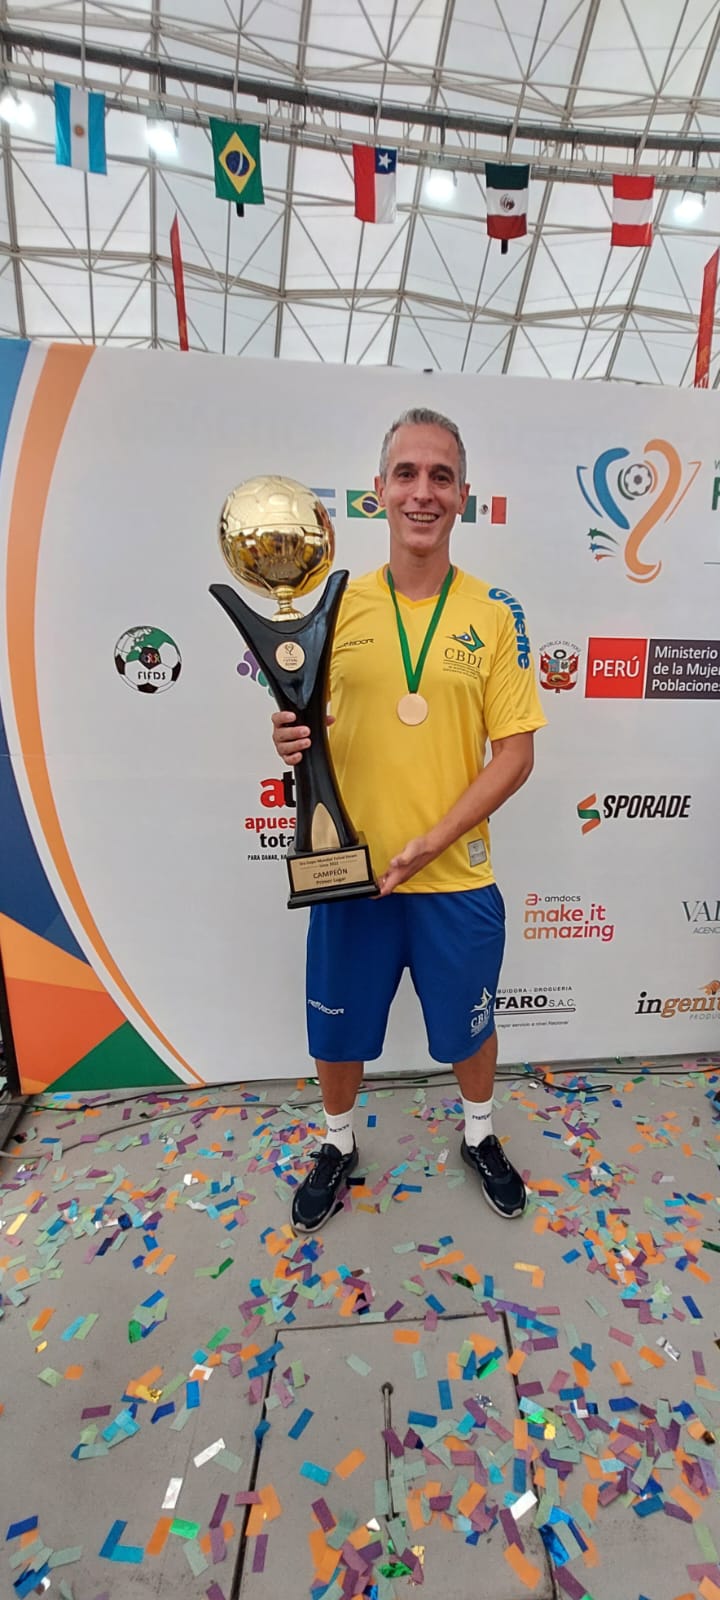 Ele treina a seleção brasileira de futsal Down e hoje é campeão mundial -  17/05/2021 - UOL ECOA